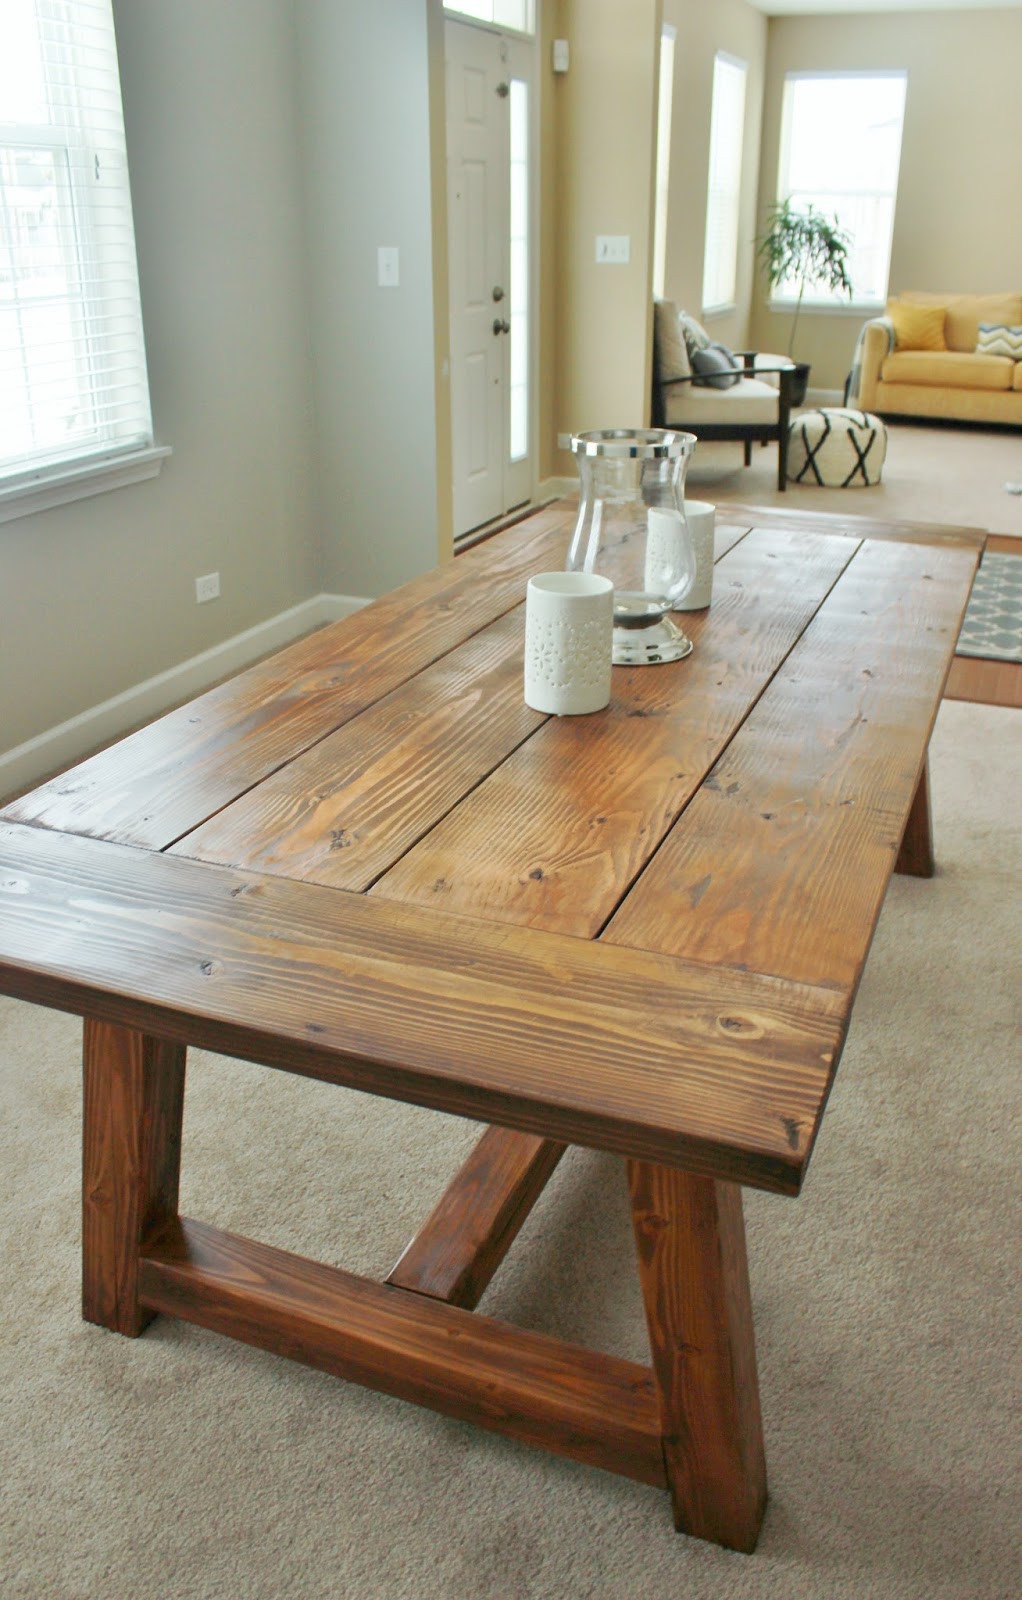 DIY Farmhouse Table Plans
 Holy Cannoli We Built a Farmhouse Dining Room Table